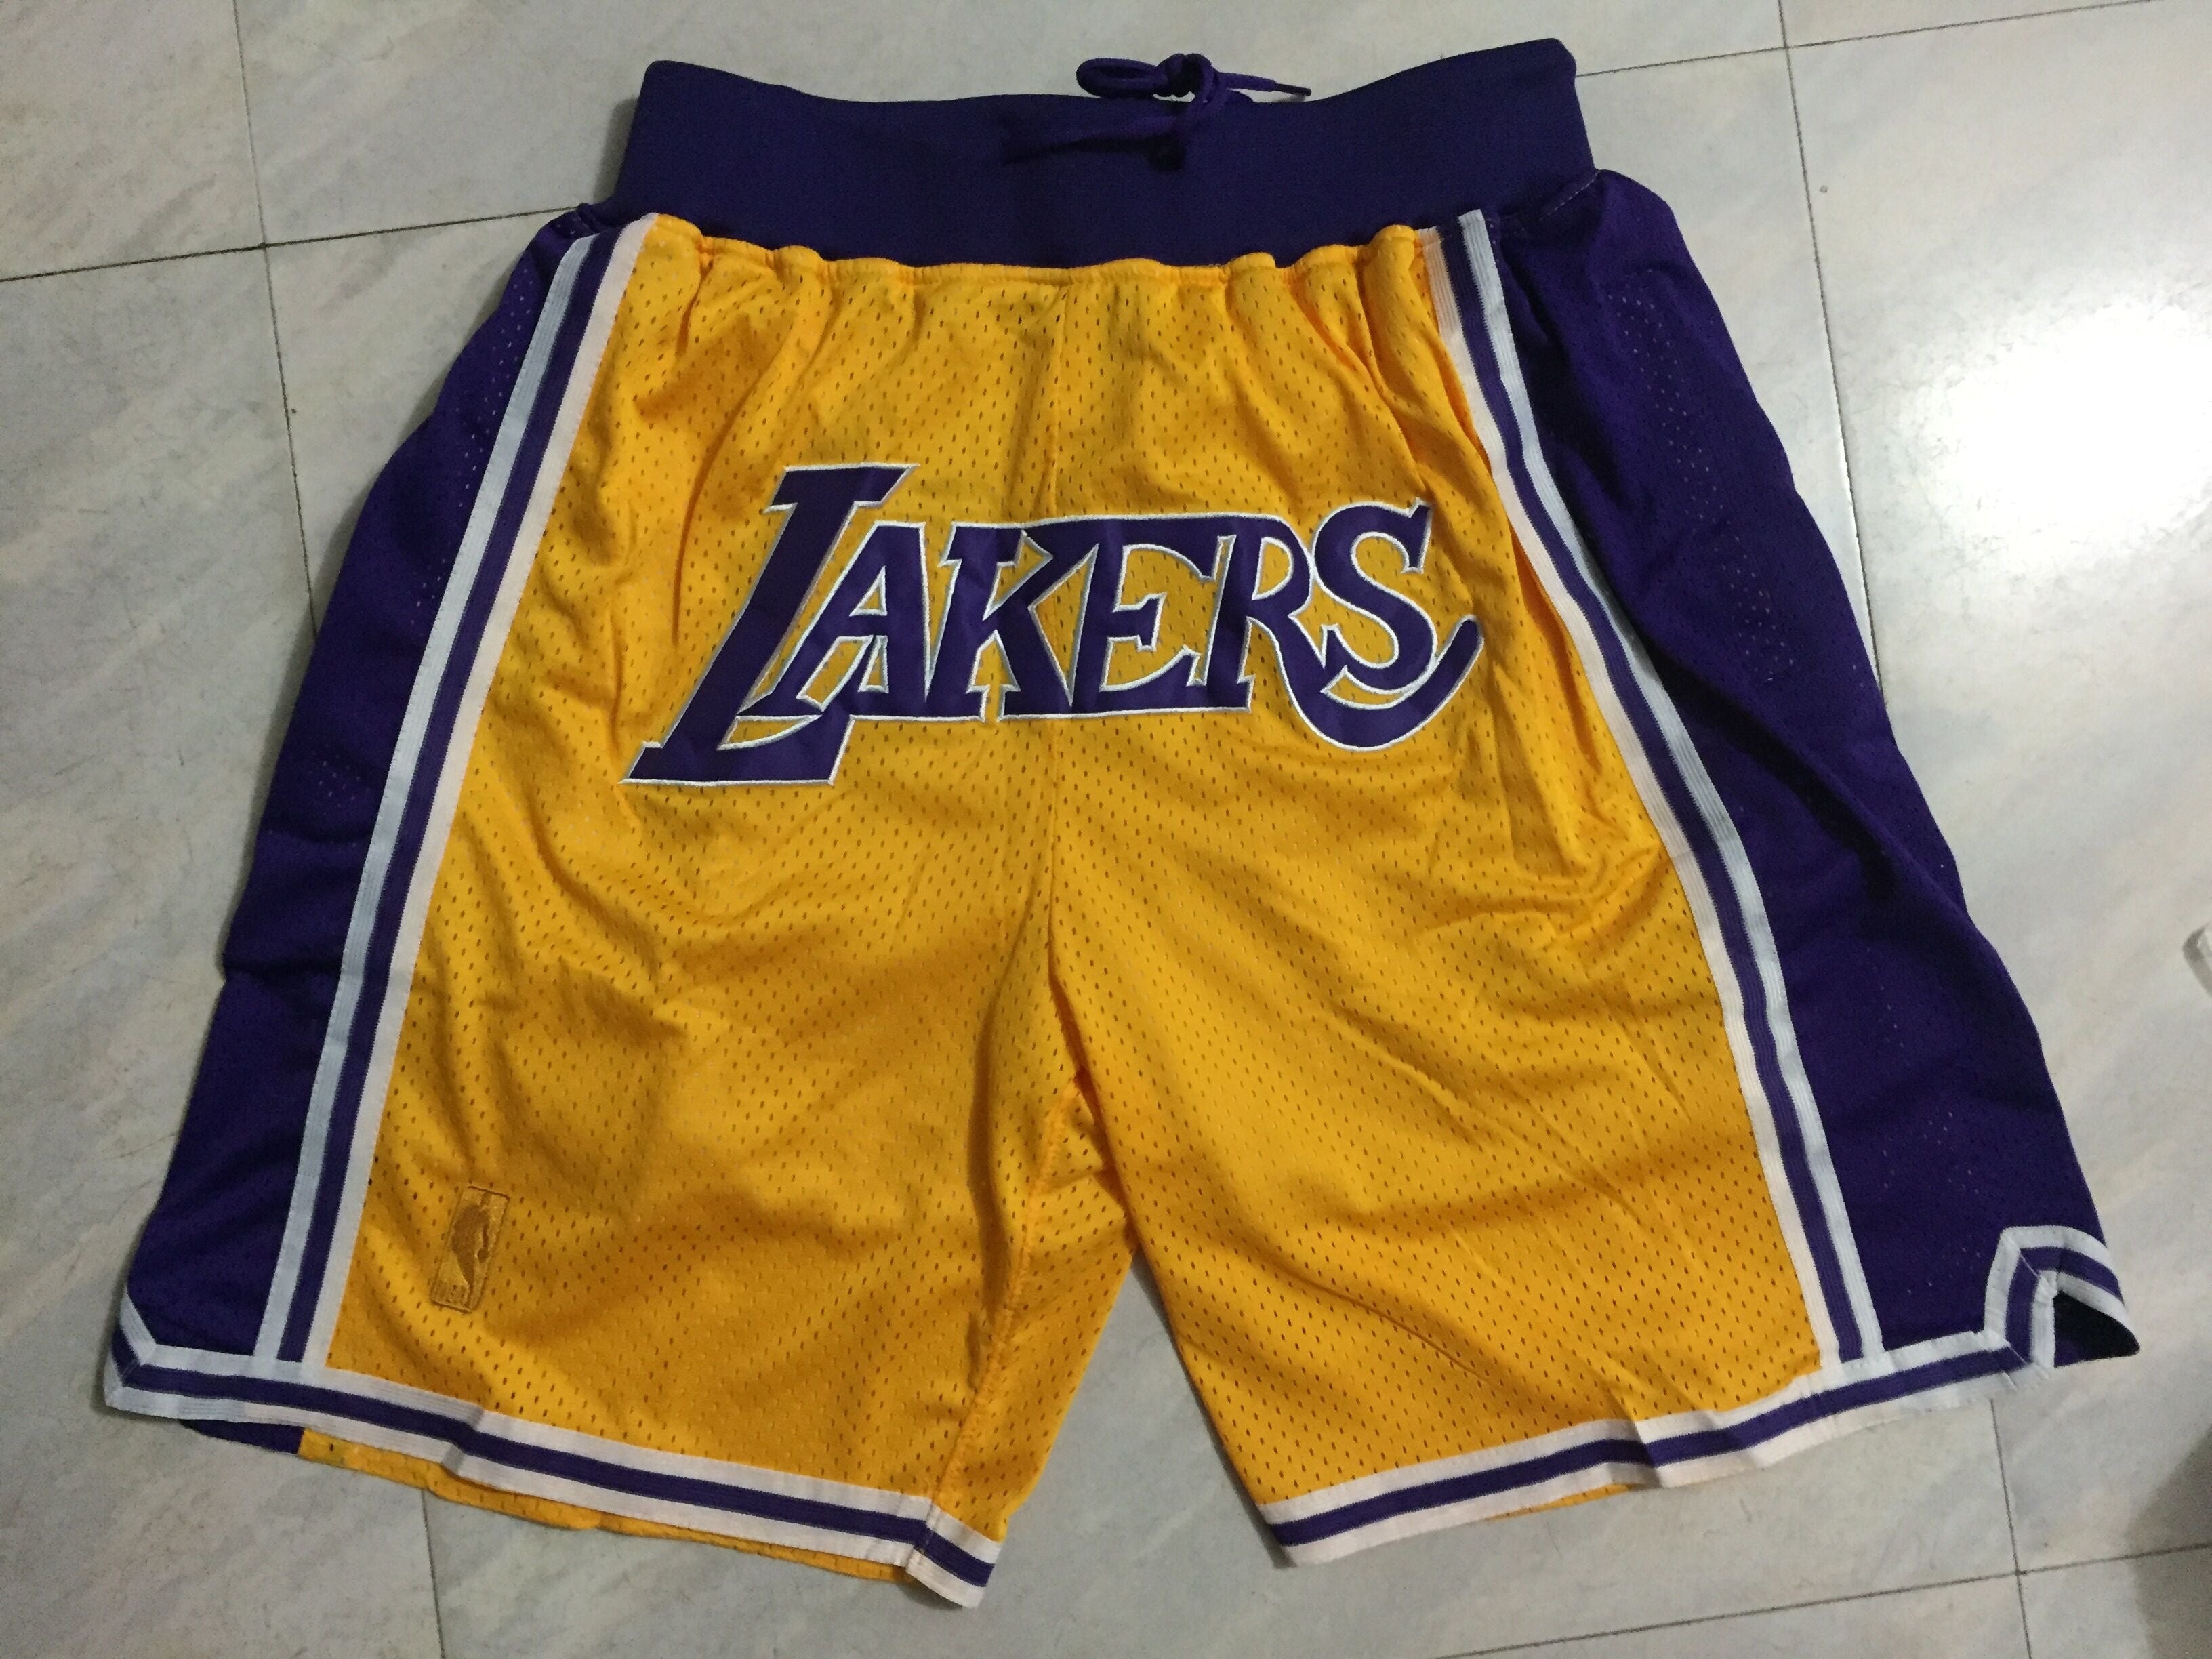 Lakers purple-yellow shorts